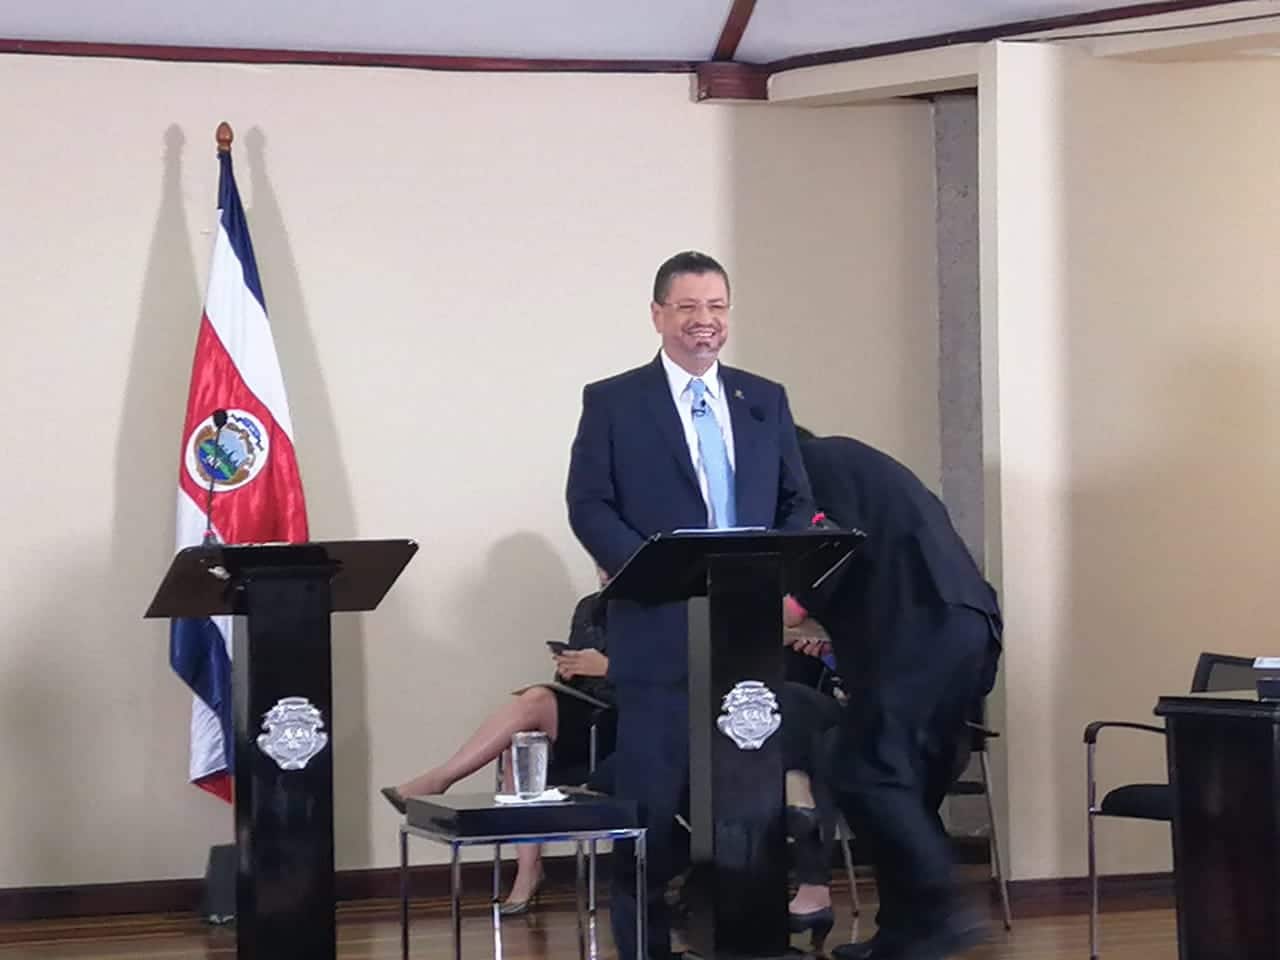 Valoración del Presidente Chaves bajó 11 puntos en tres meses pero sigue alta, según encuesta de la UCR